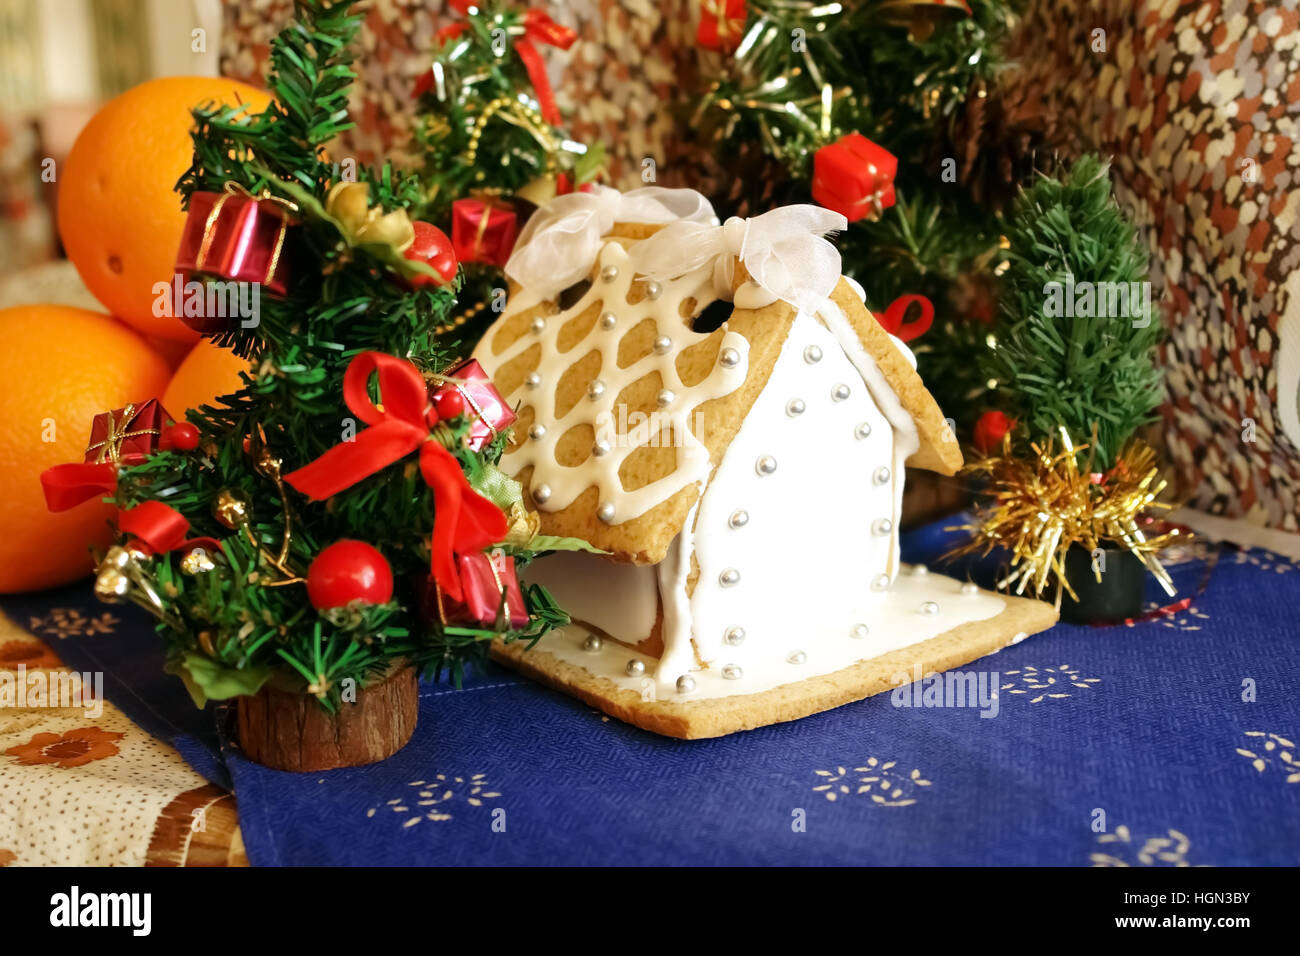 La composition avec le gingembre maison, cadeaux de Noël, arbres de Noël et des oranges. Banque D'Images